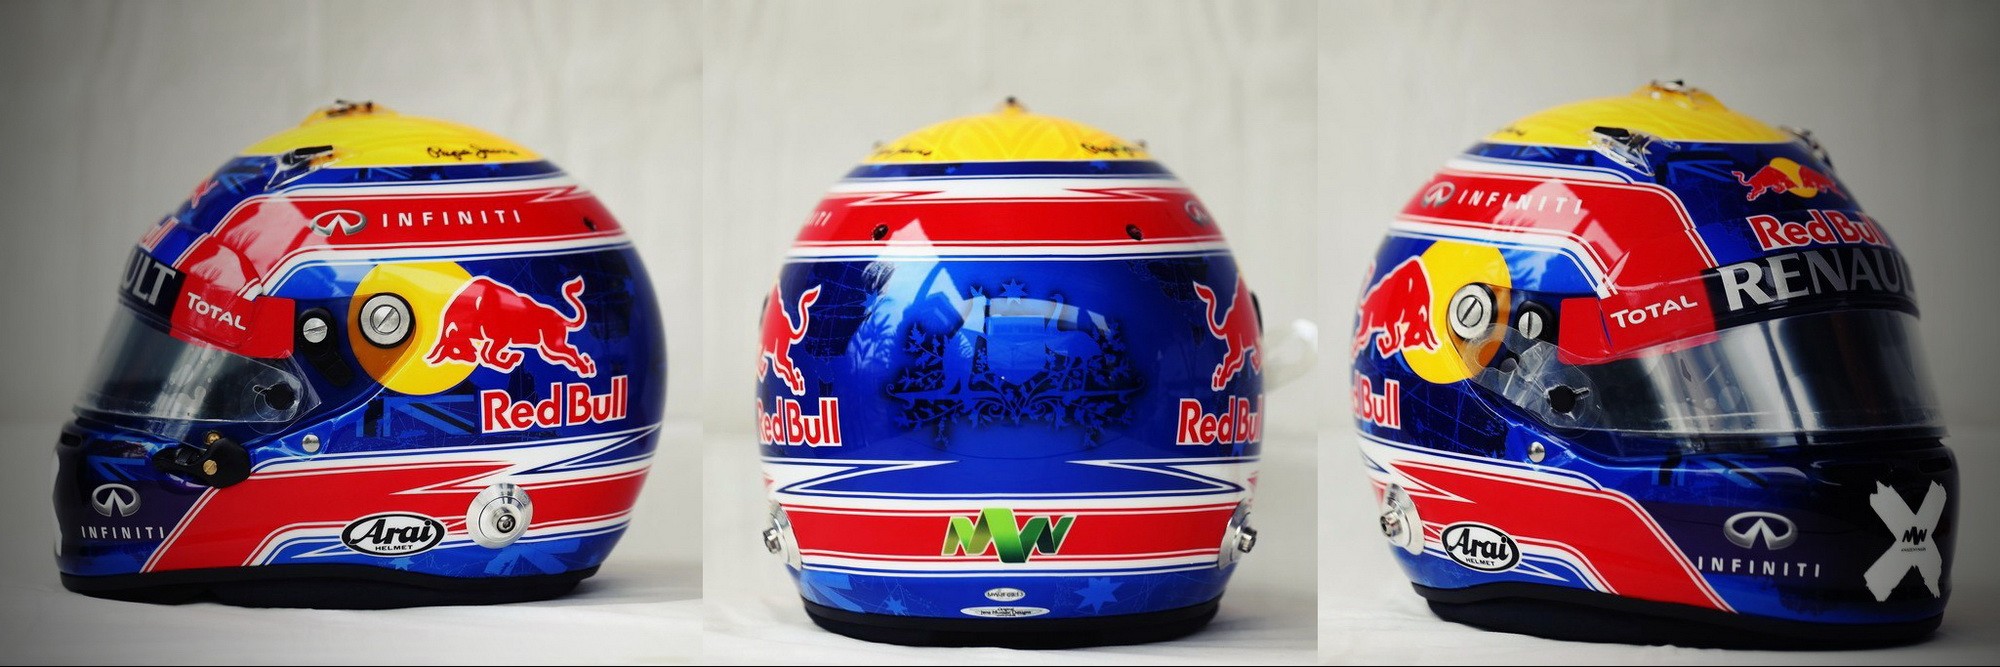 Шлем Марка Уэббера на Гран-При Бразилии 2013 | 2013 Brazilian Grand Prix helmet of Mark Webber